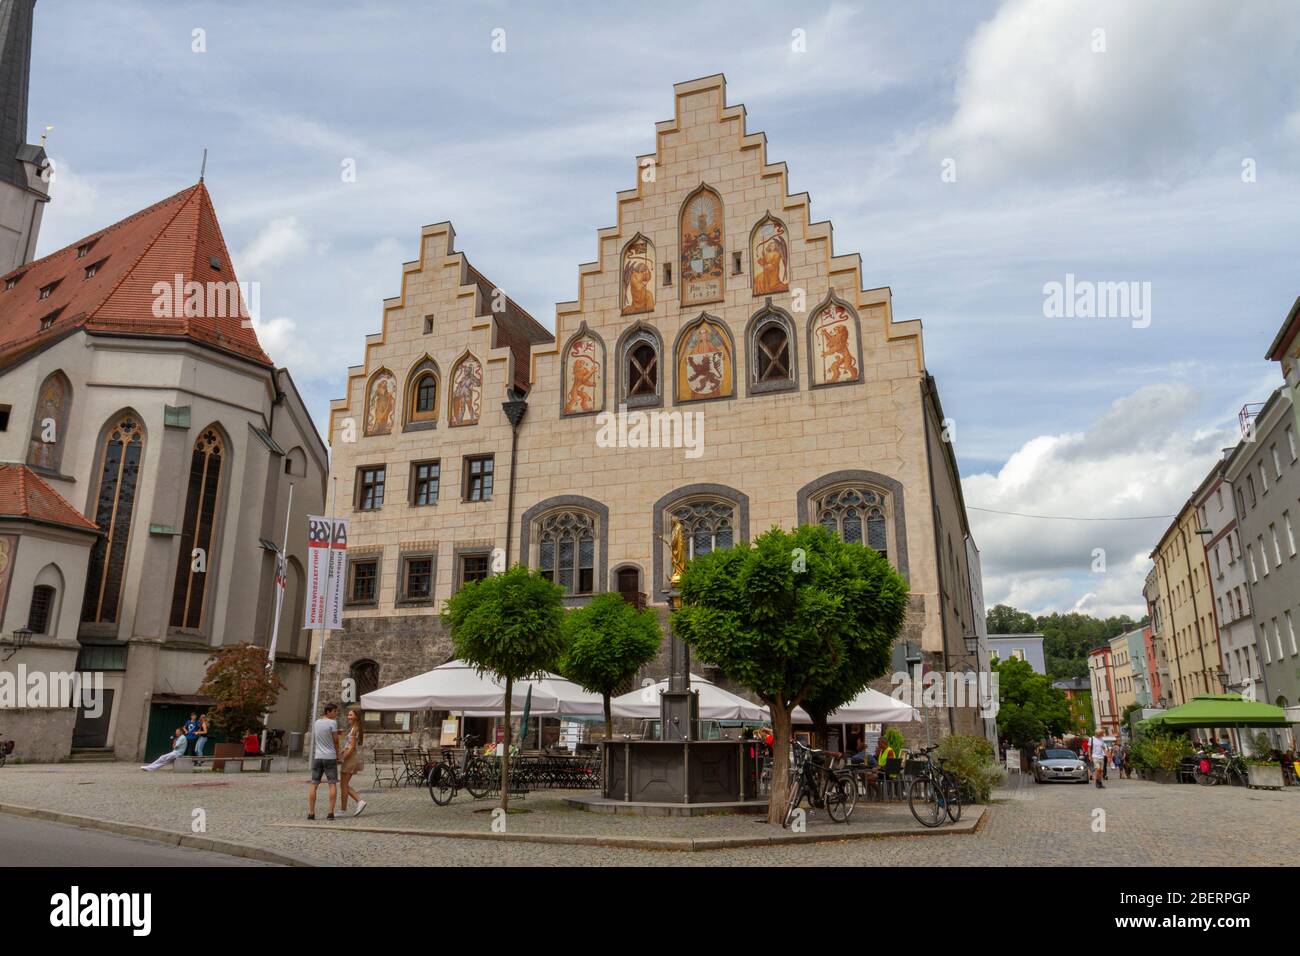 Das Historische Rathaus in Wasserburg, Bayern, Deutschland. Stockfoto